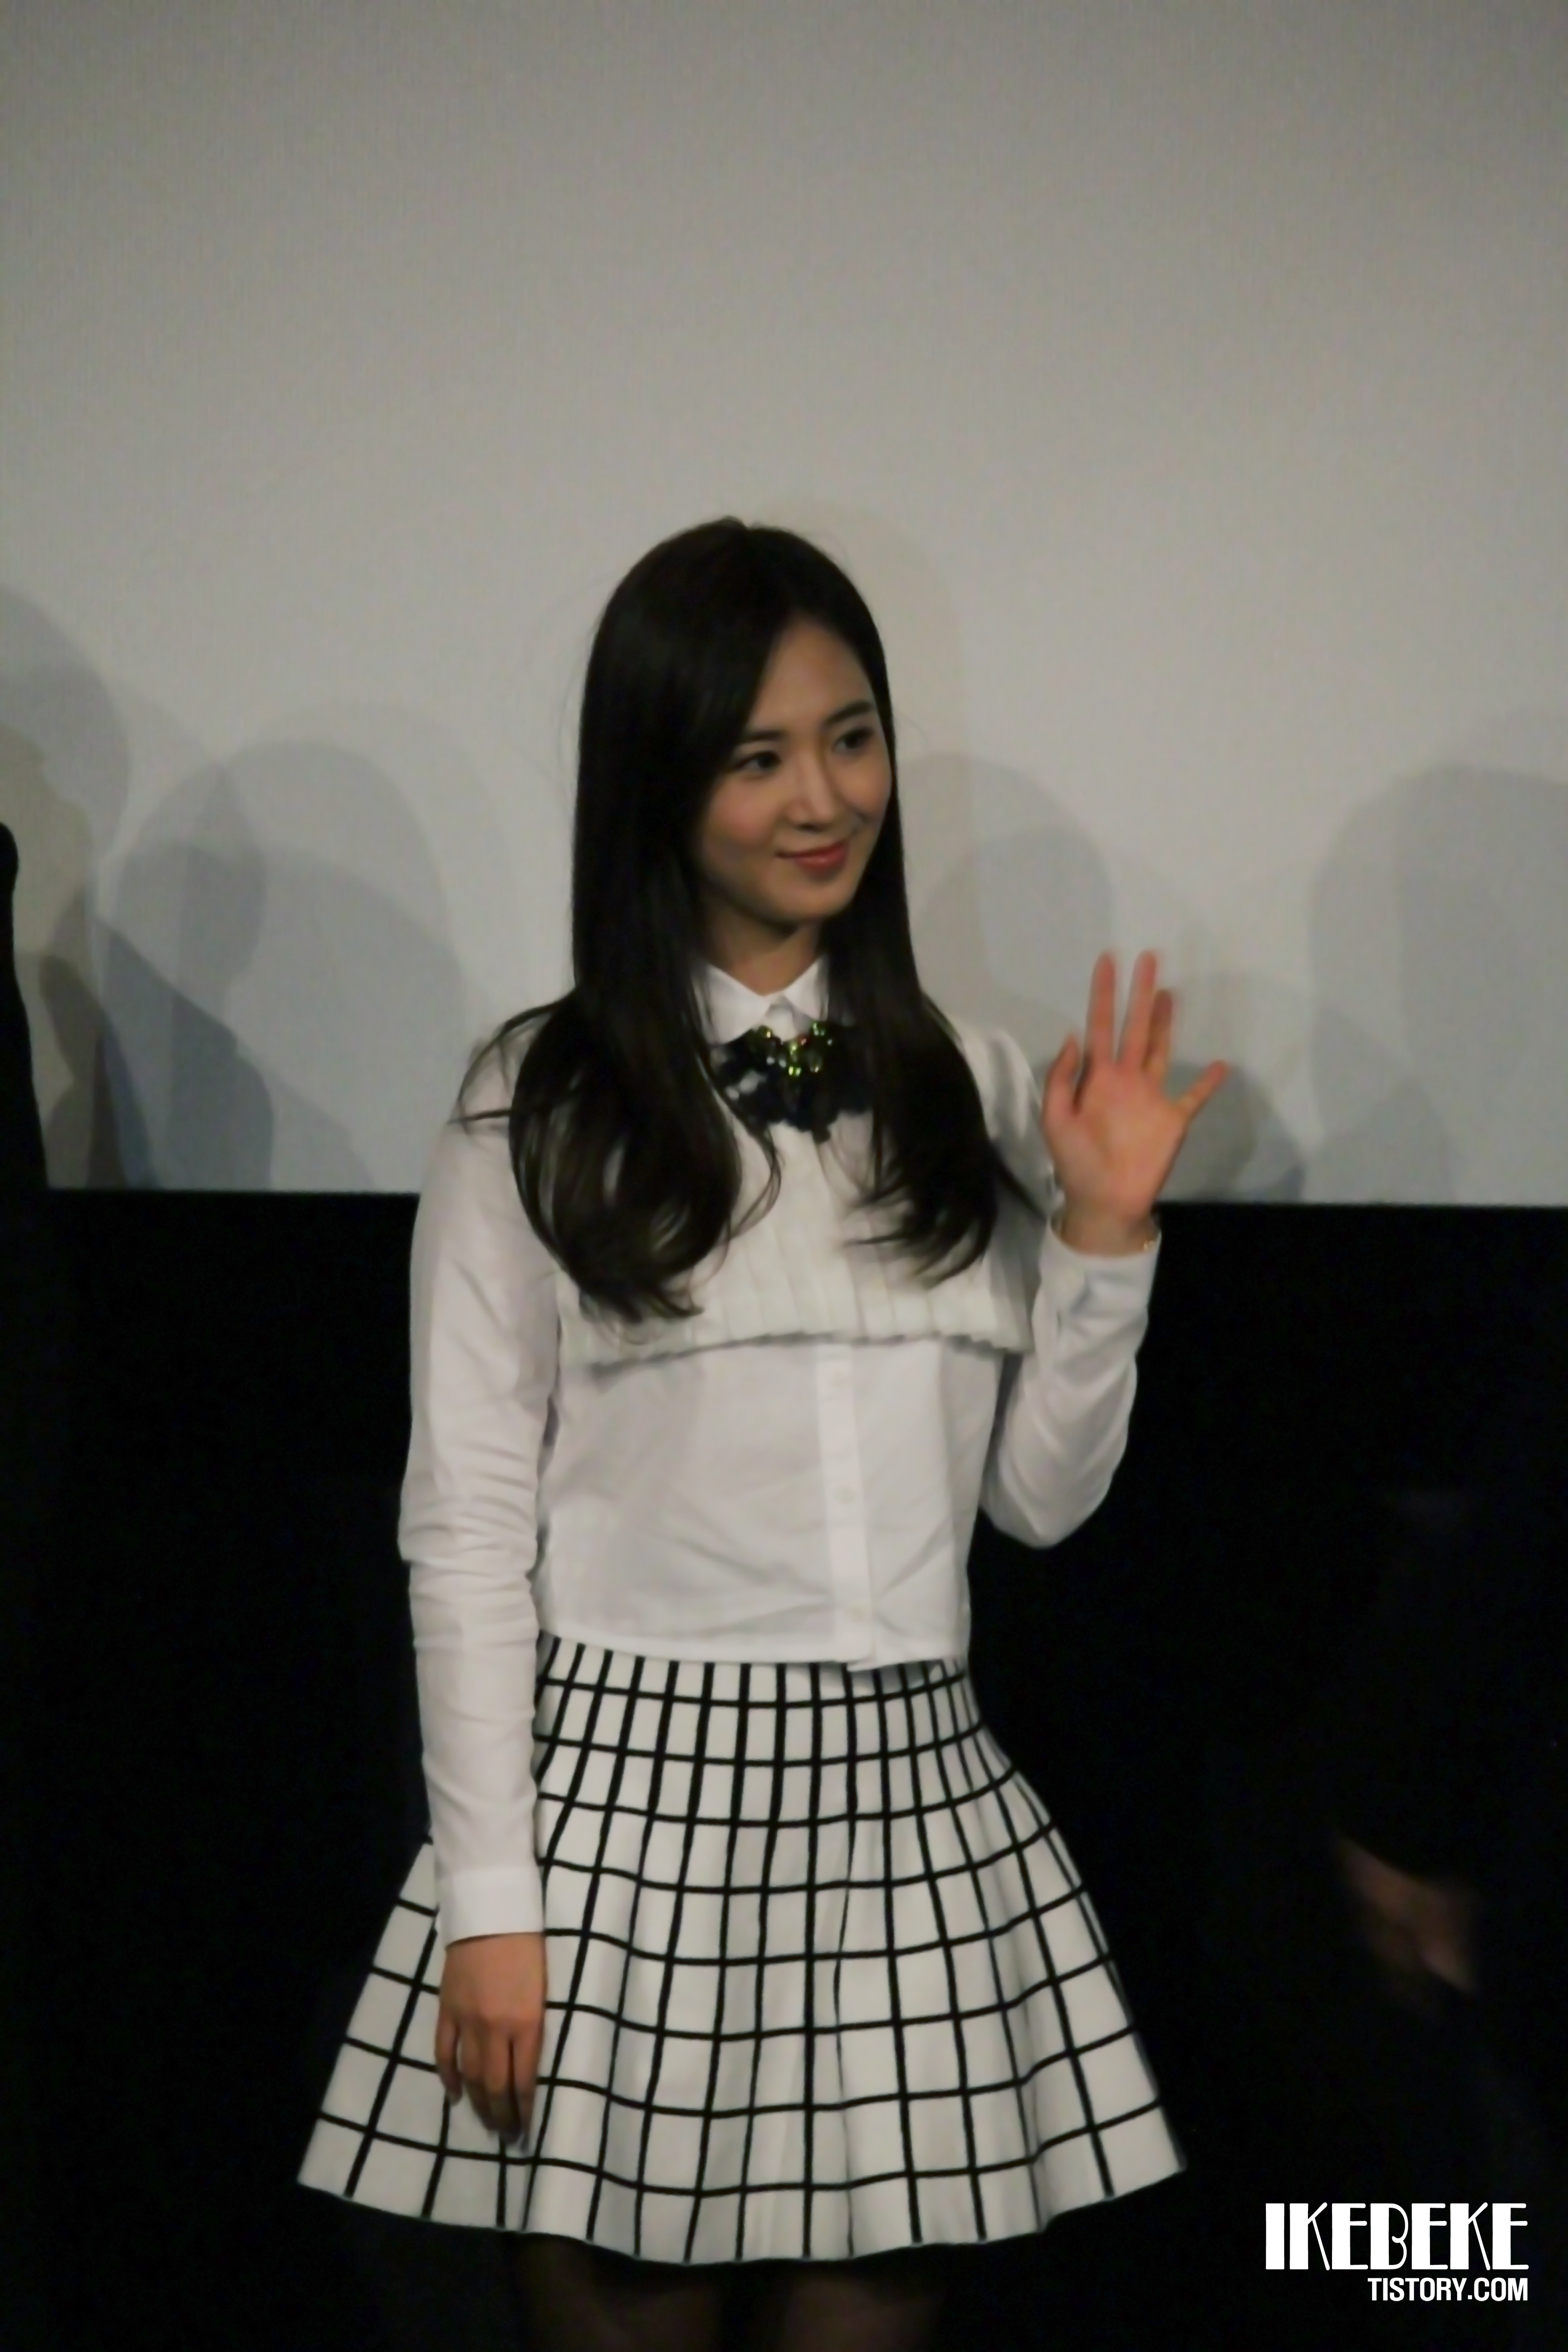 [PIC][07-11-2013]Yuri xuất hiện tại sự kiện "Lotte Cinema" Stage Greeting vào chiều nay + Selca của cô cùng các diễn viên khác 266BED3B527D2276036880